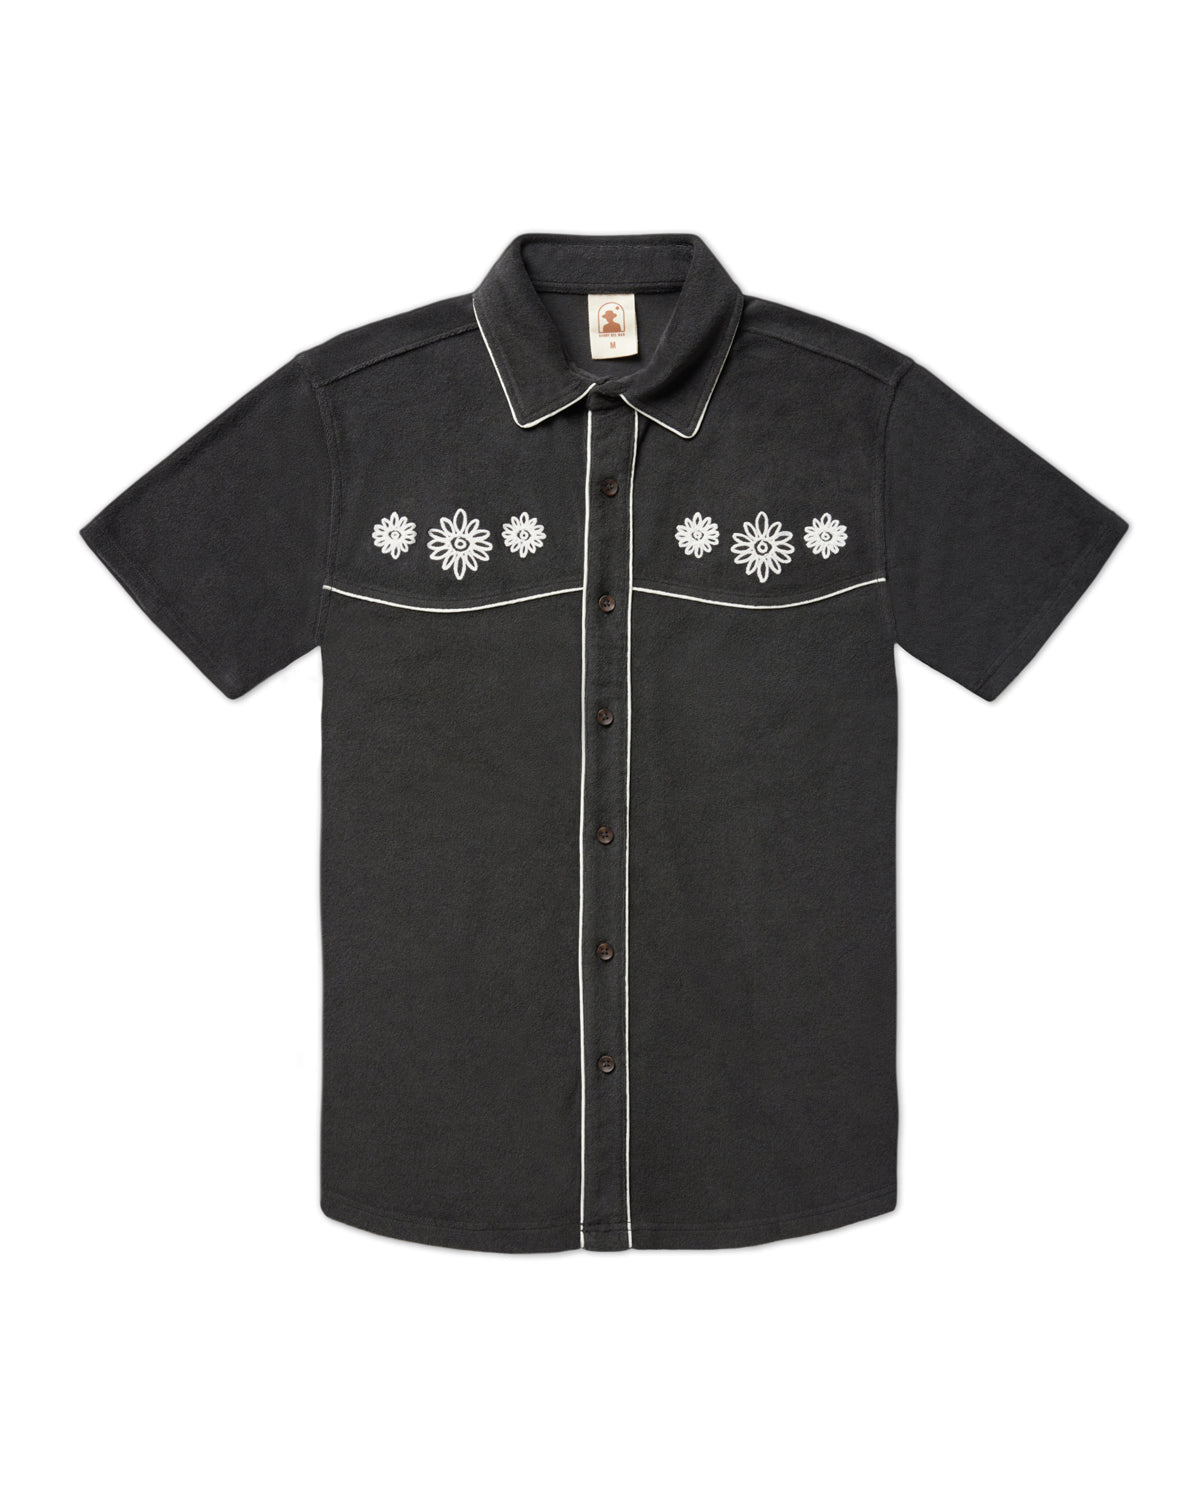 The Gaucho Terry Cloth Shirt - Onyx – Dandy Del Mar